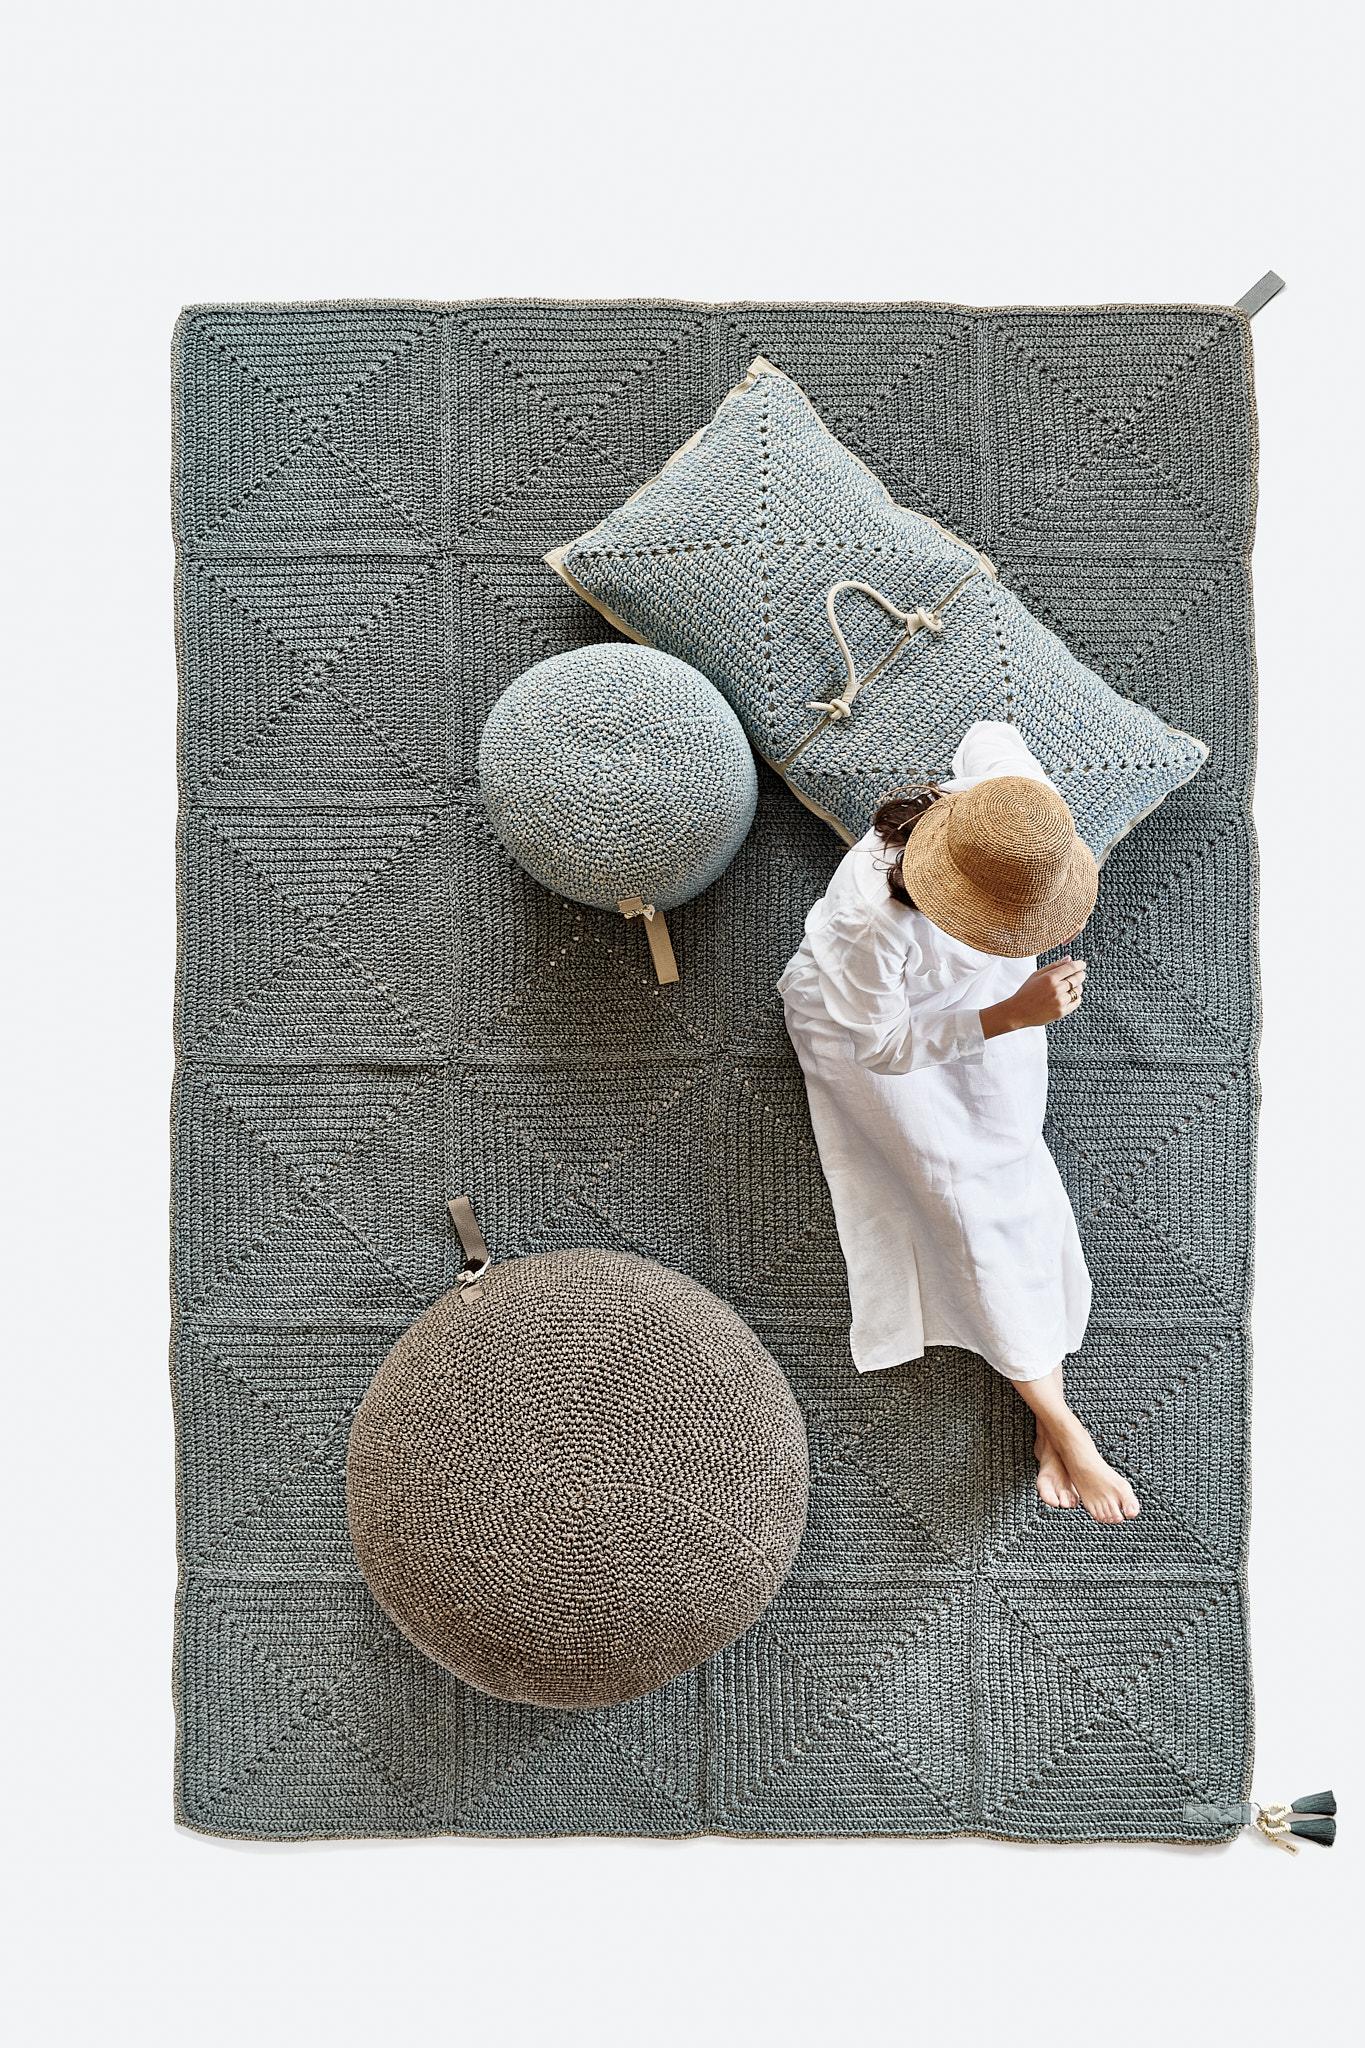 Das klassische gehäkelte Granny Square erhält mit diesem Outdoor-Teppich eine moderne Note. Große Quadrate formen den Teppich, der mit maßgeschneidertem Gurtband eingefasst ist. Das aus UV-geschütztem Jota-Garn in Erdtönen handgefertigte Textil ist